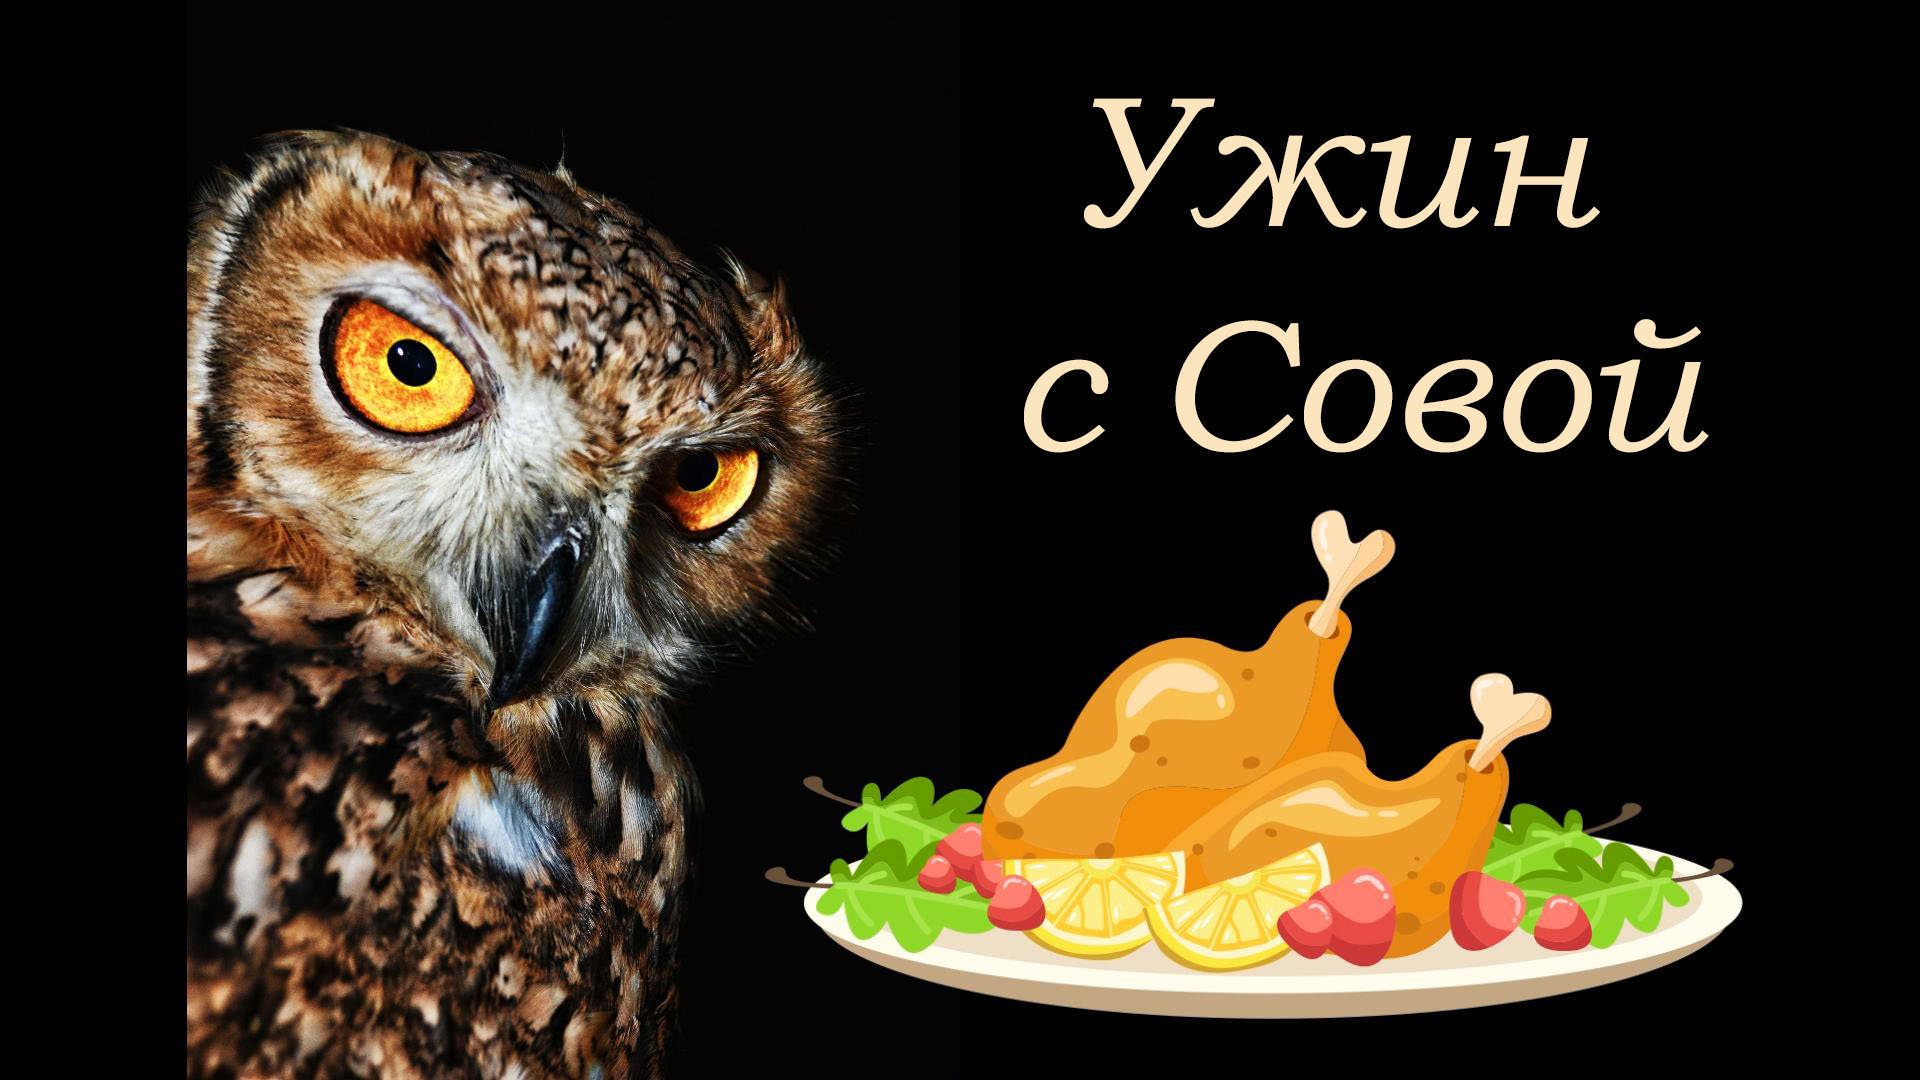 Инди-хоррор Dinner With Owl. Милая игра, где вы ужинаете с совой, и ничего страшного не происходит!